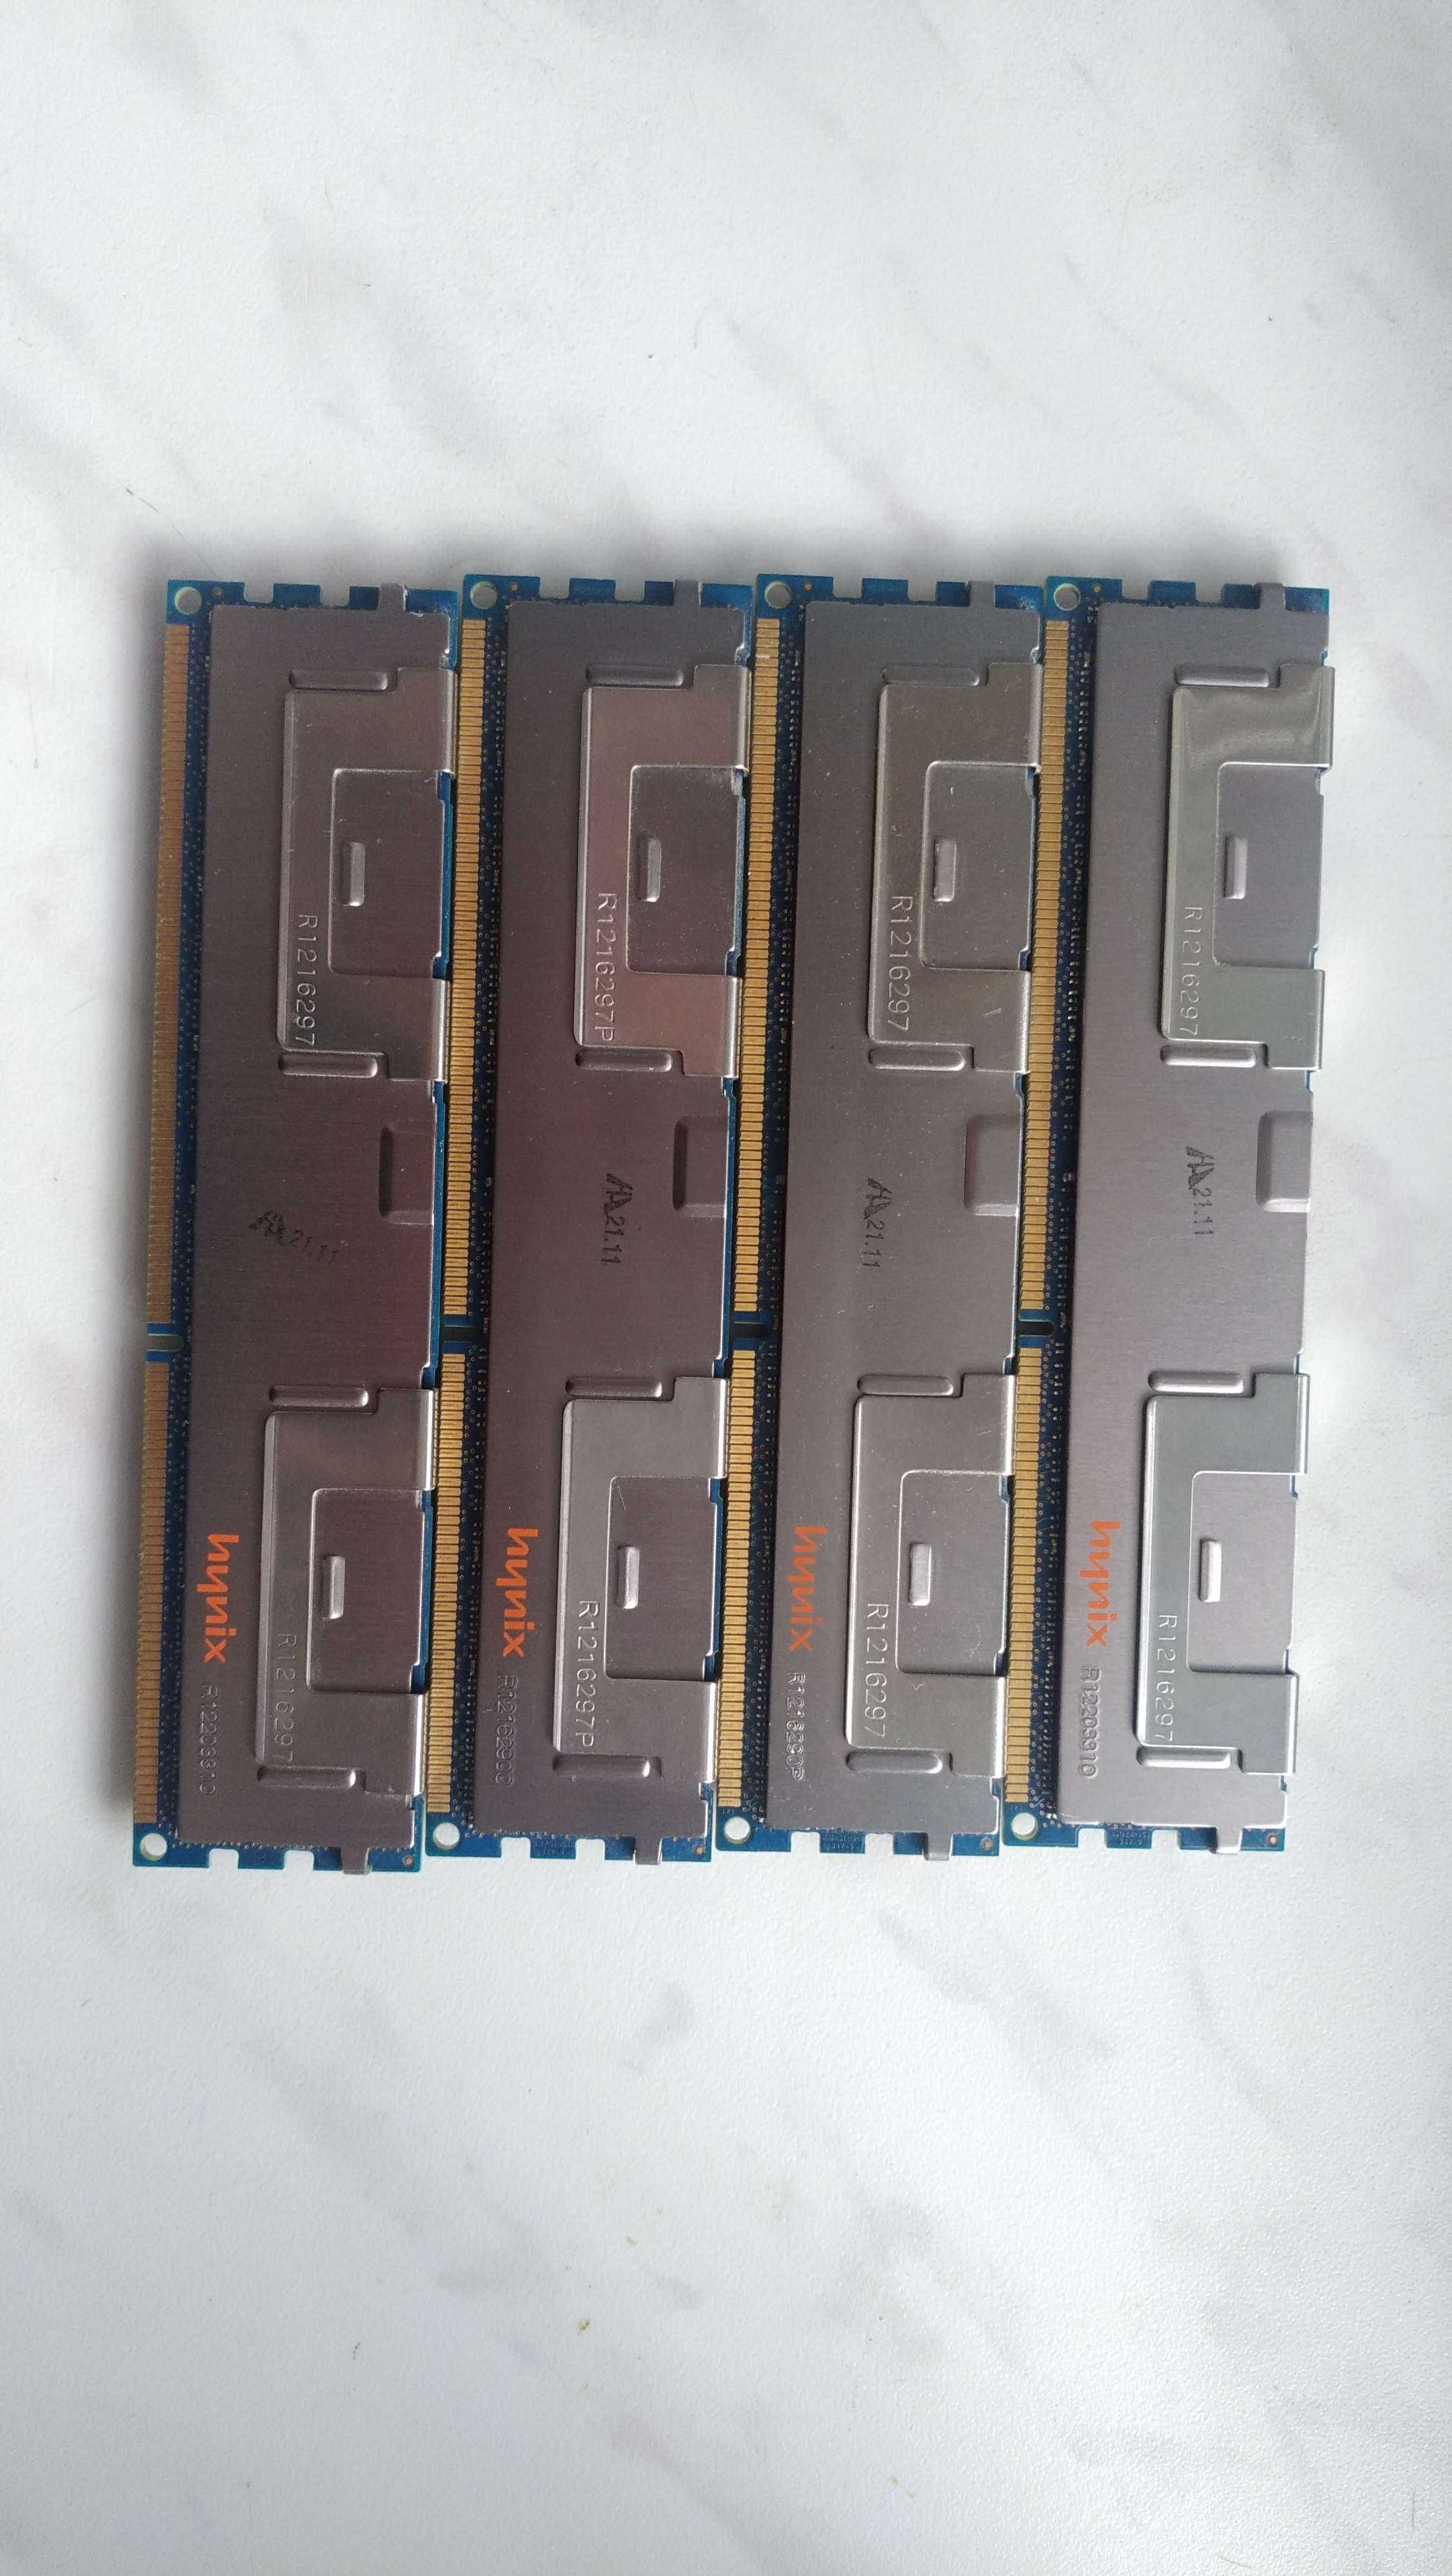 Kllisre - Оперативная память DDR3 4*8GB (32gb)